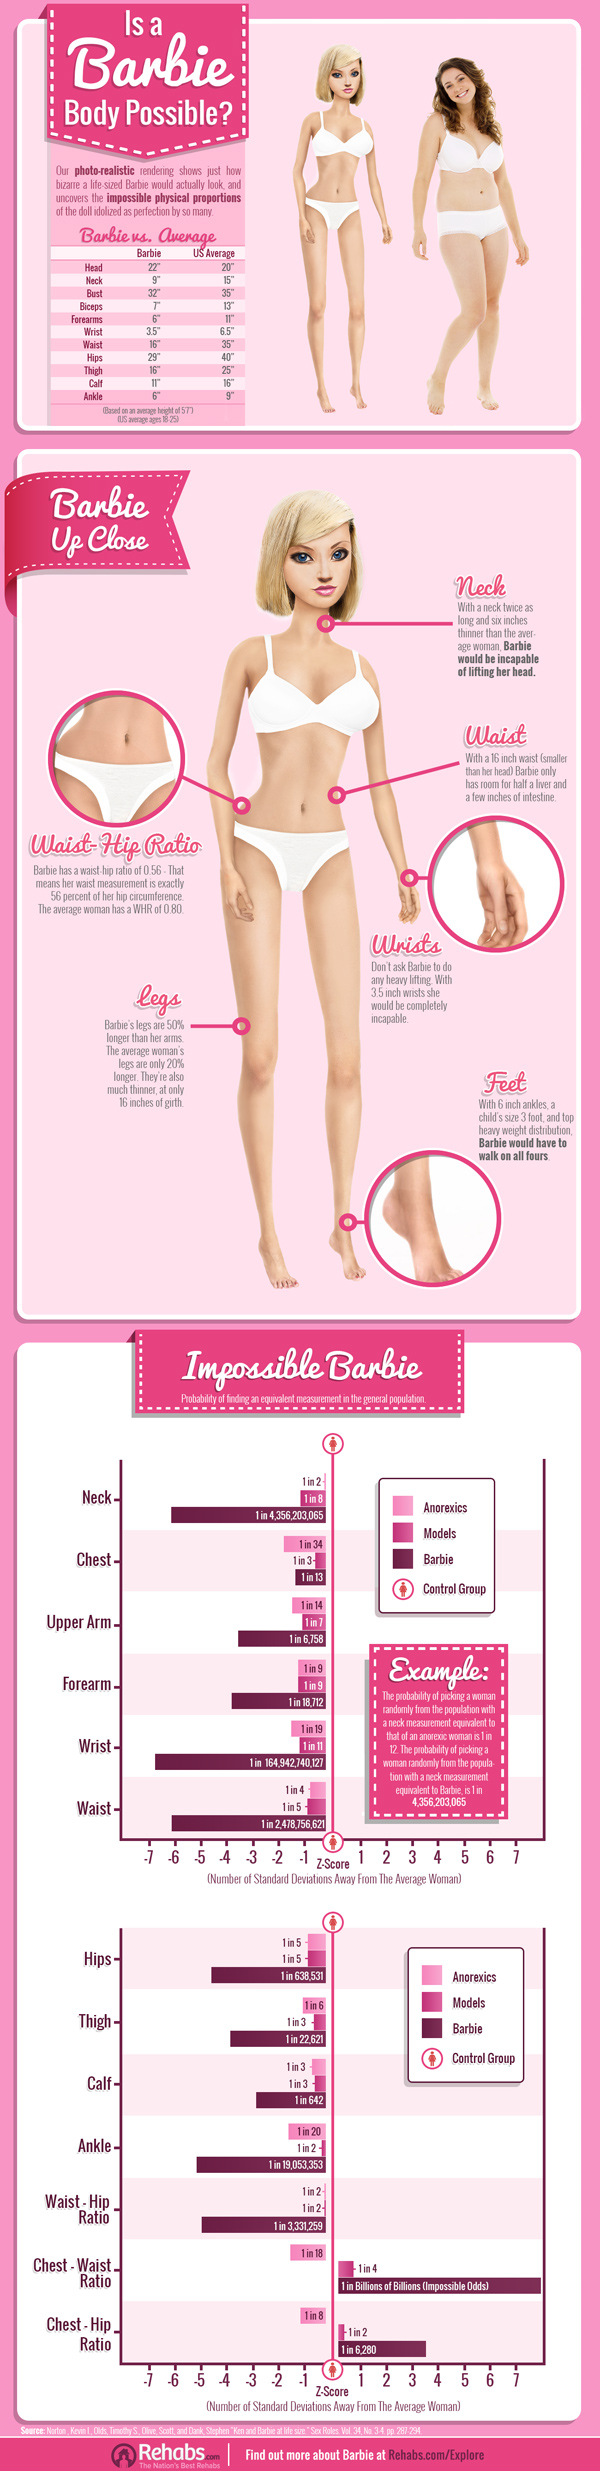 Barbie-Rehabs-Infographic-IRL